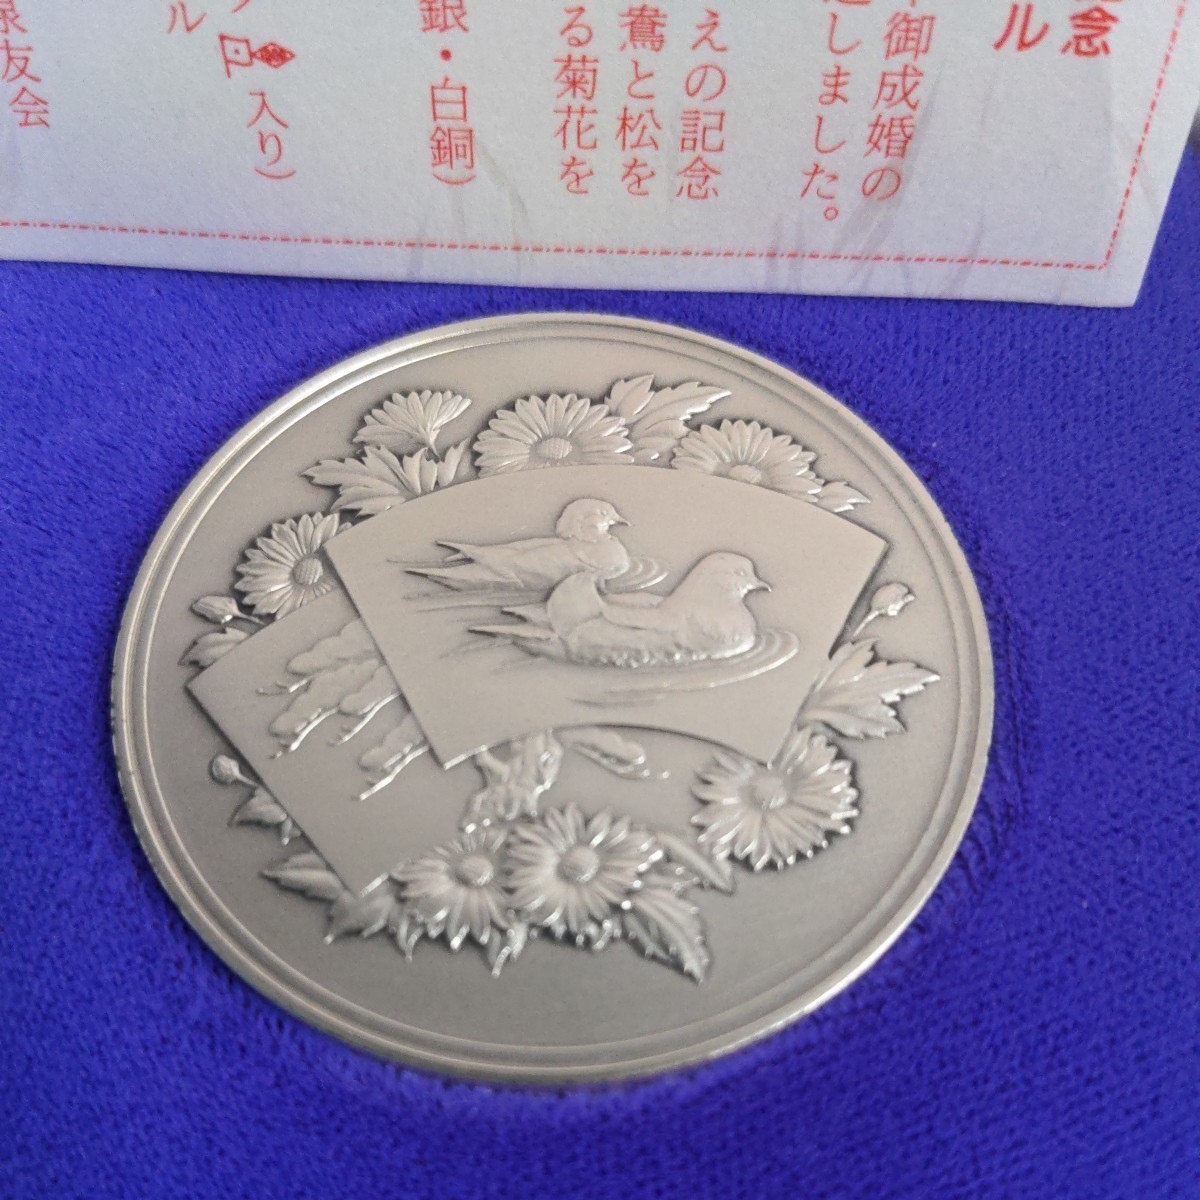 切手セット付き、皇太子殿下御成婚記念貨幣、発行記念メダル　純銀120g，大蔵省造幣局製作 記念メダル　_画像1